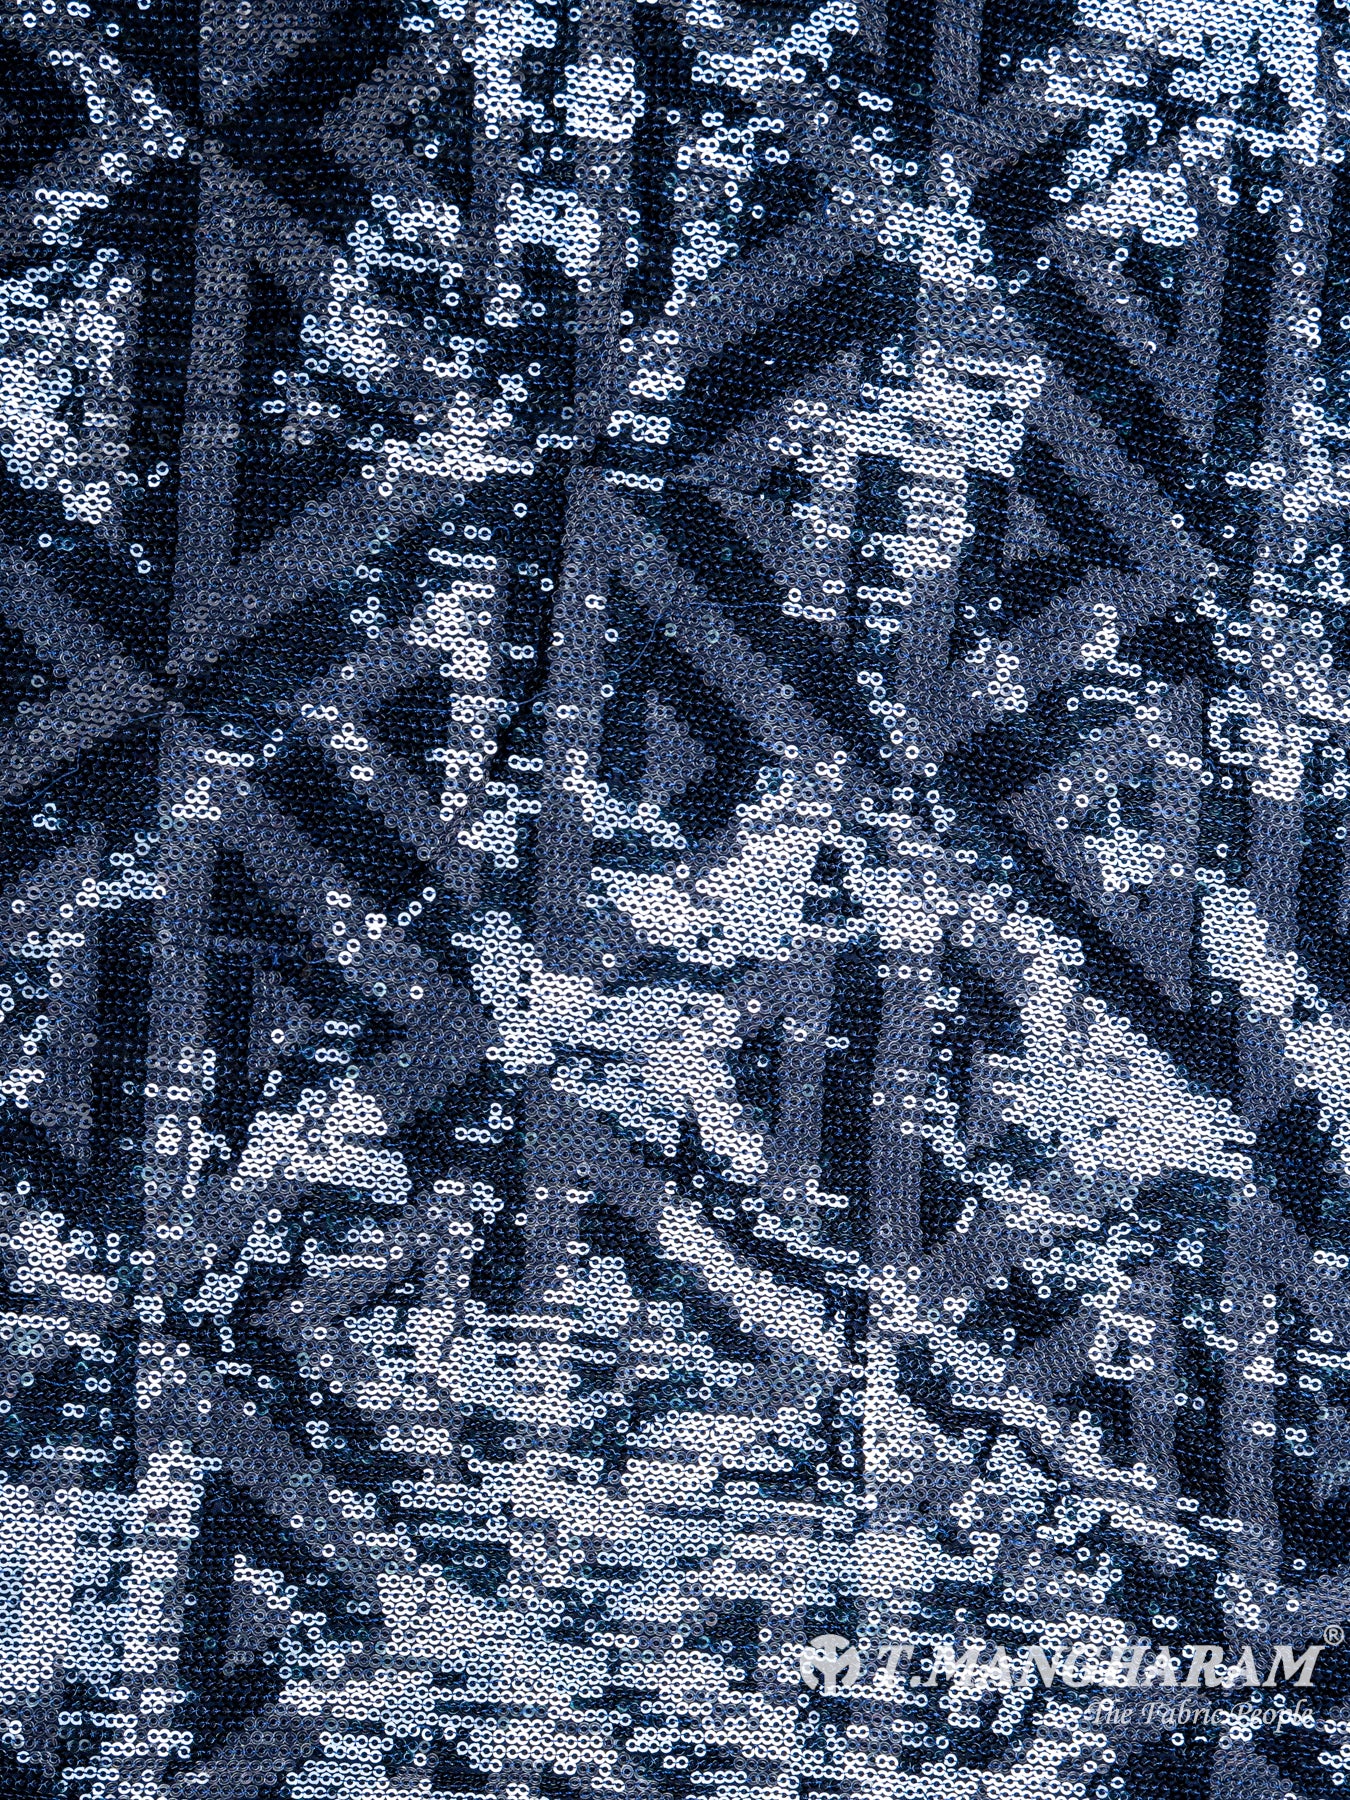 Blue Fancy Net Fabric - EC5383 view-3